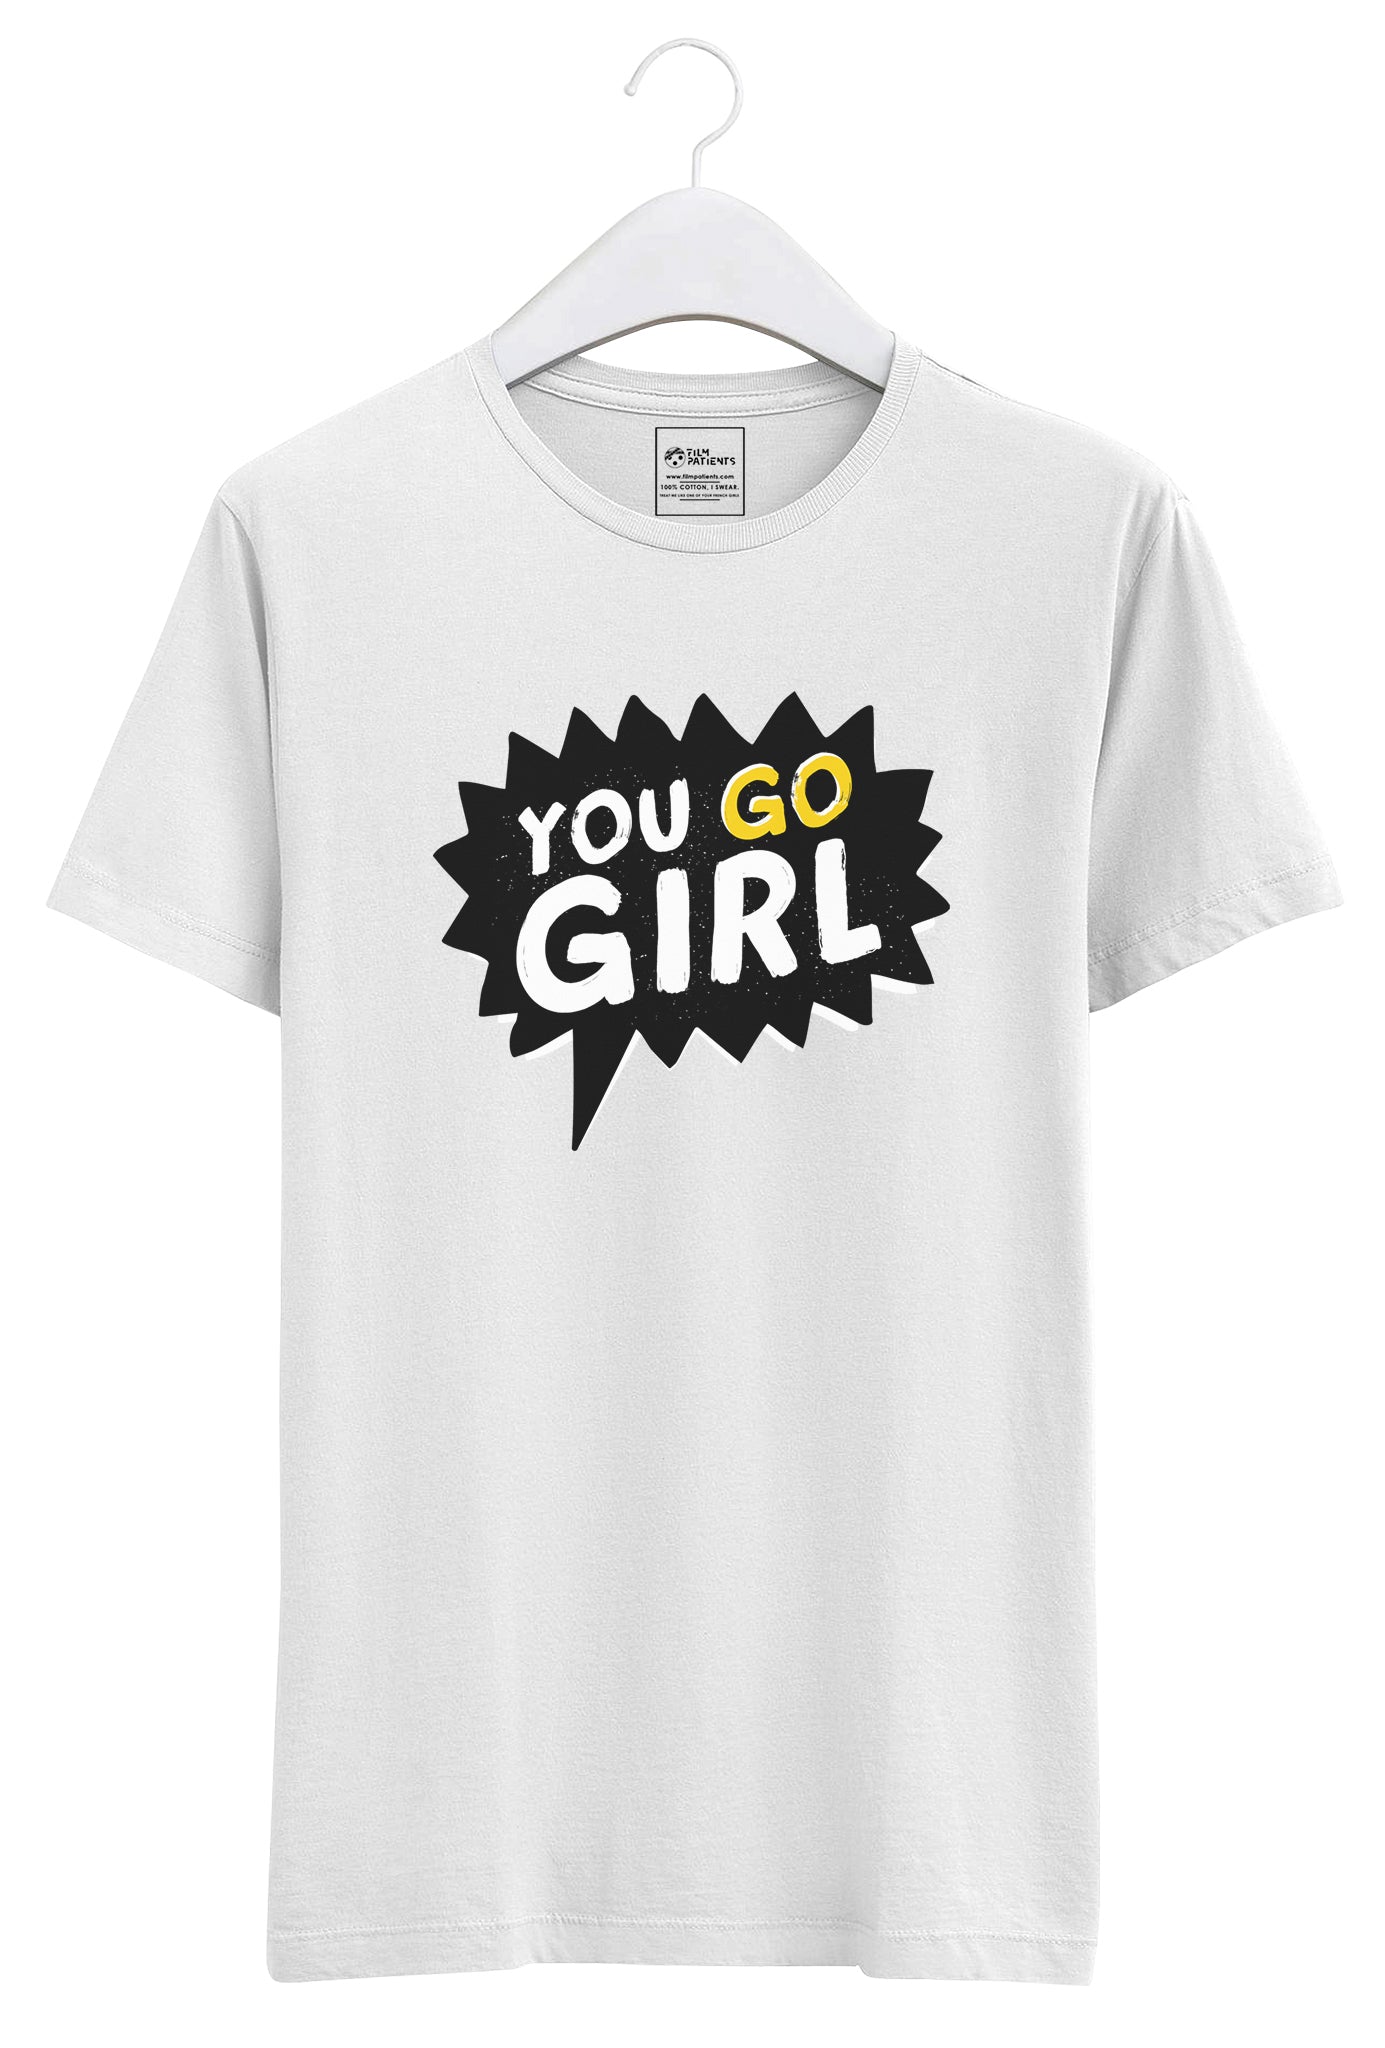 Girl Power: Go Girl Tshirt